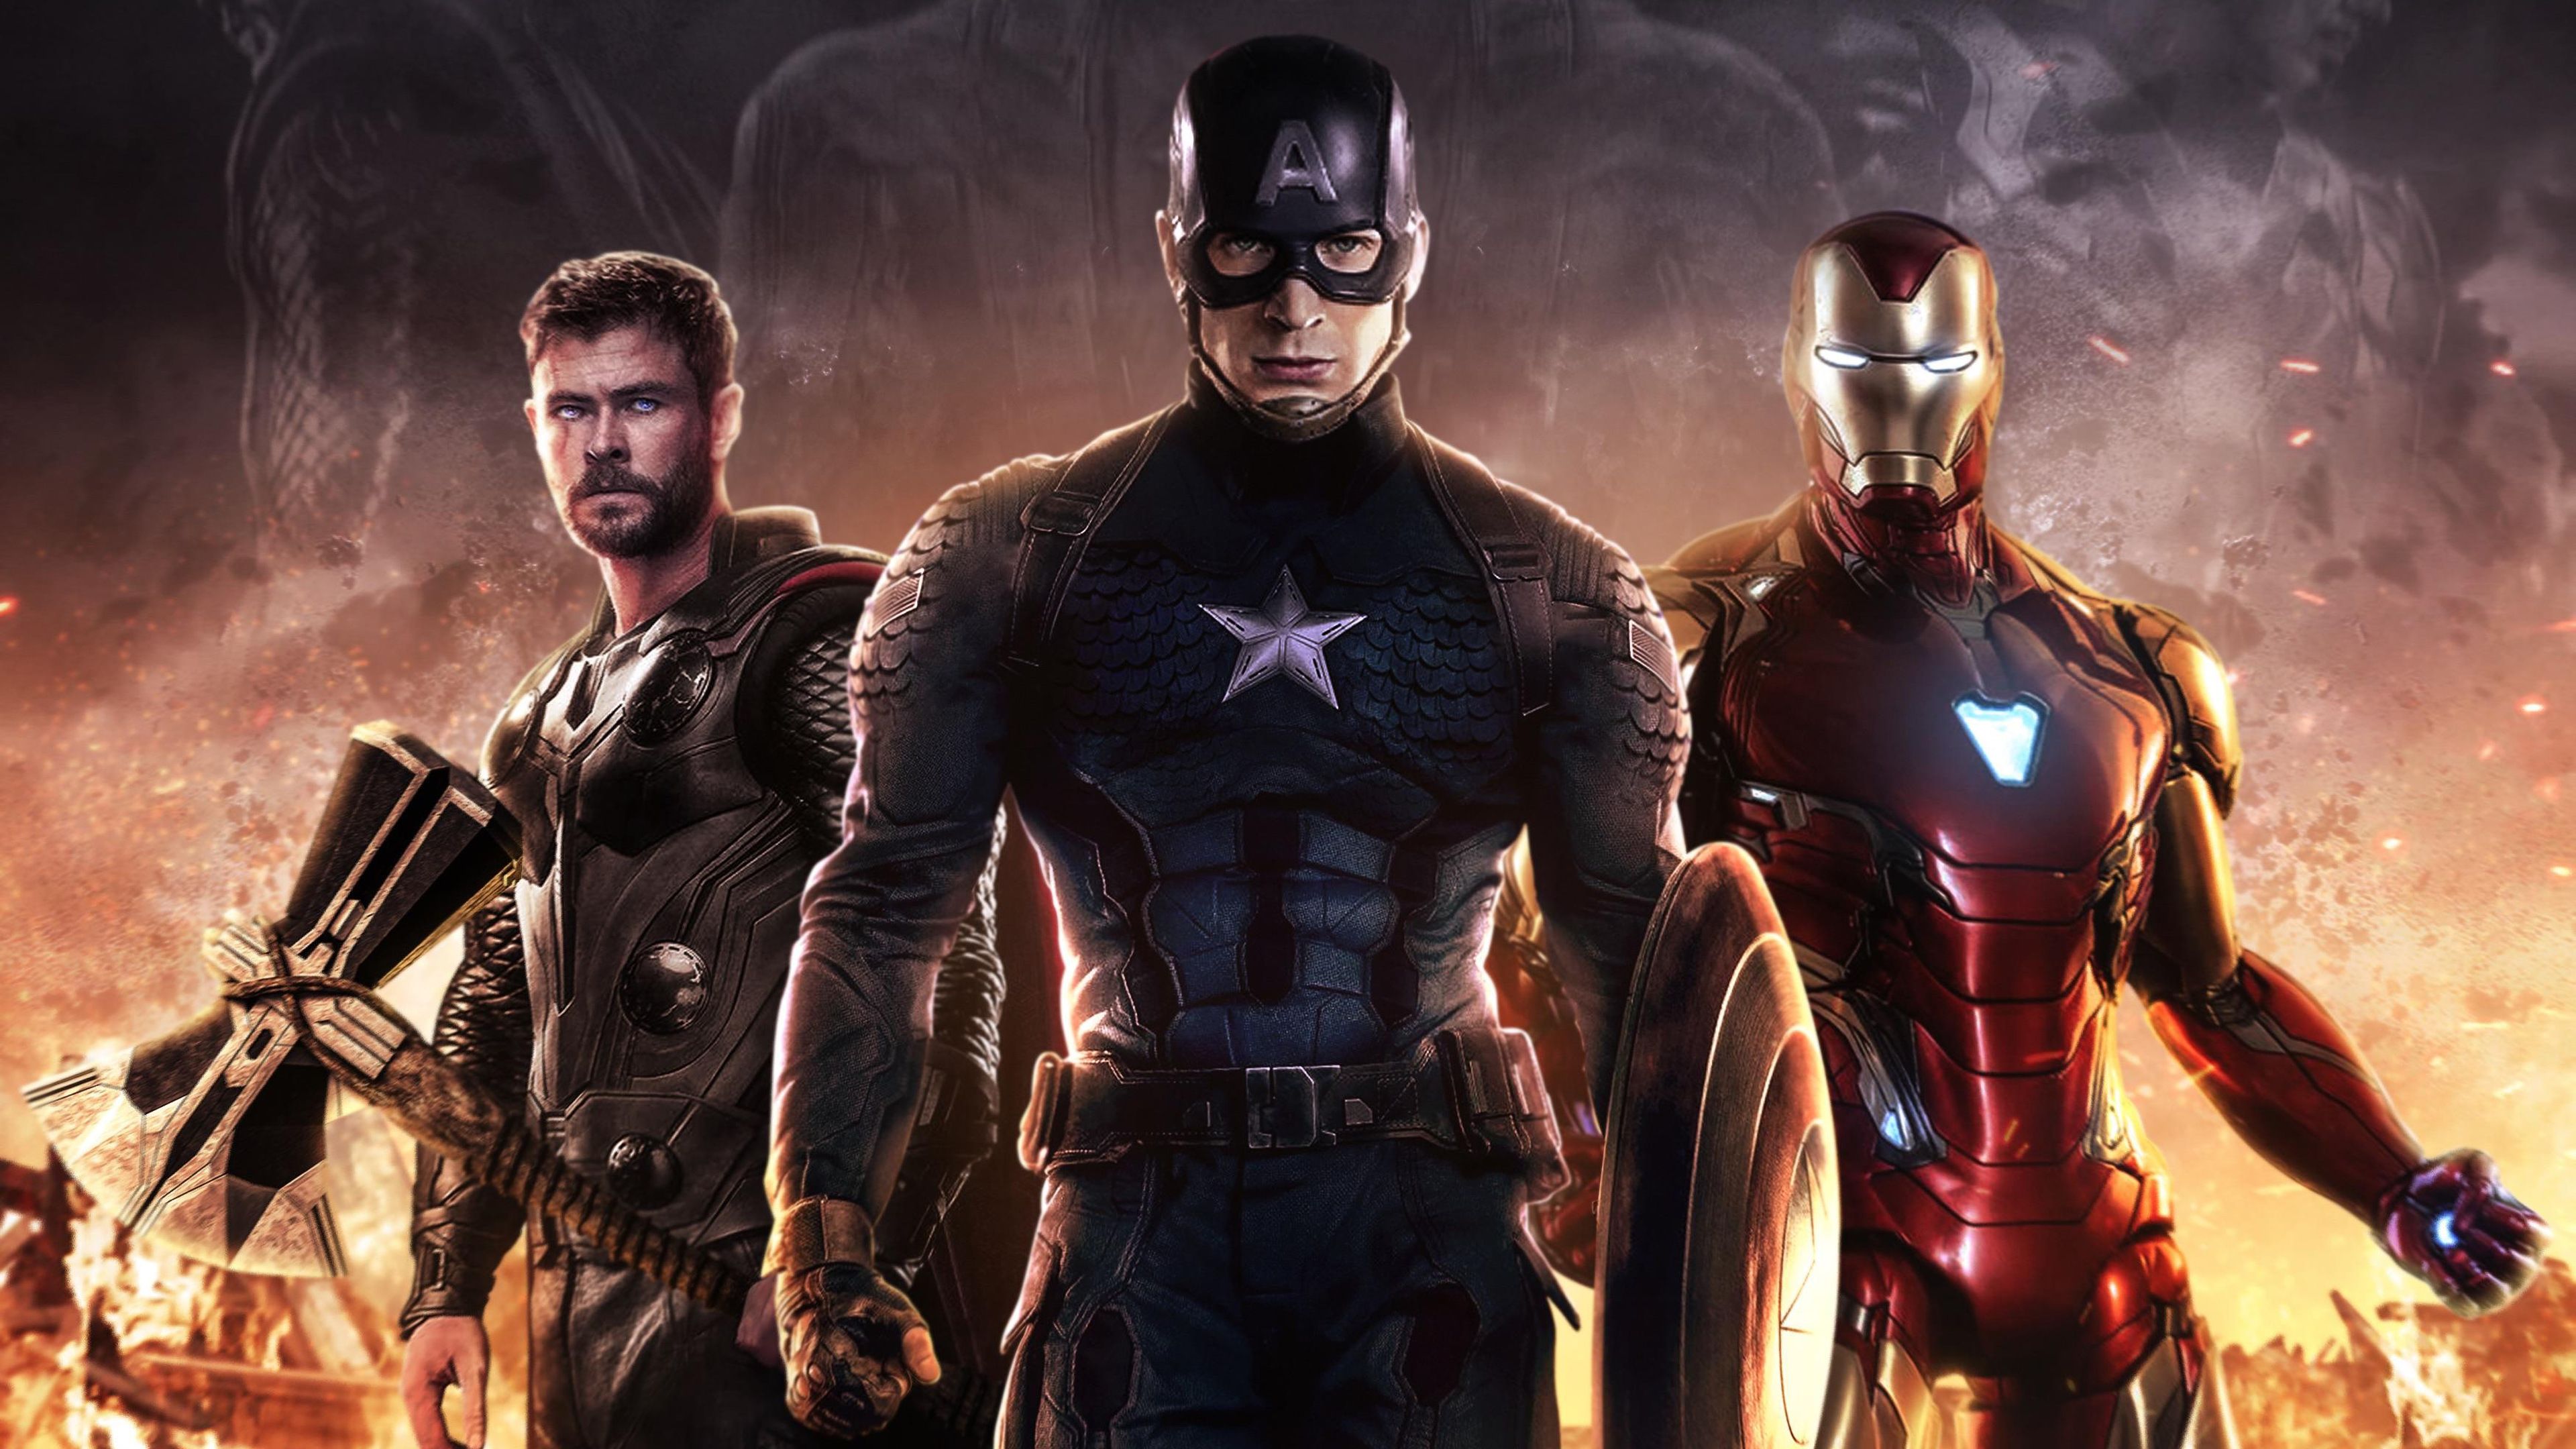 Avengers: Endgame Captain America 4K Wallpaper